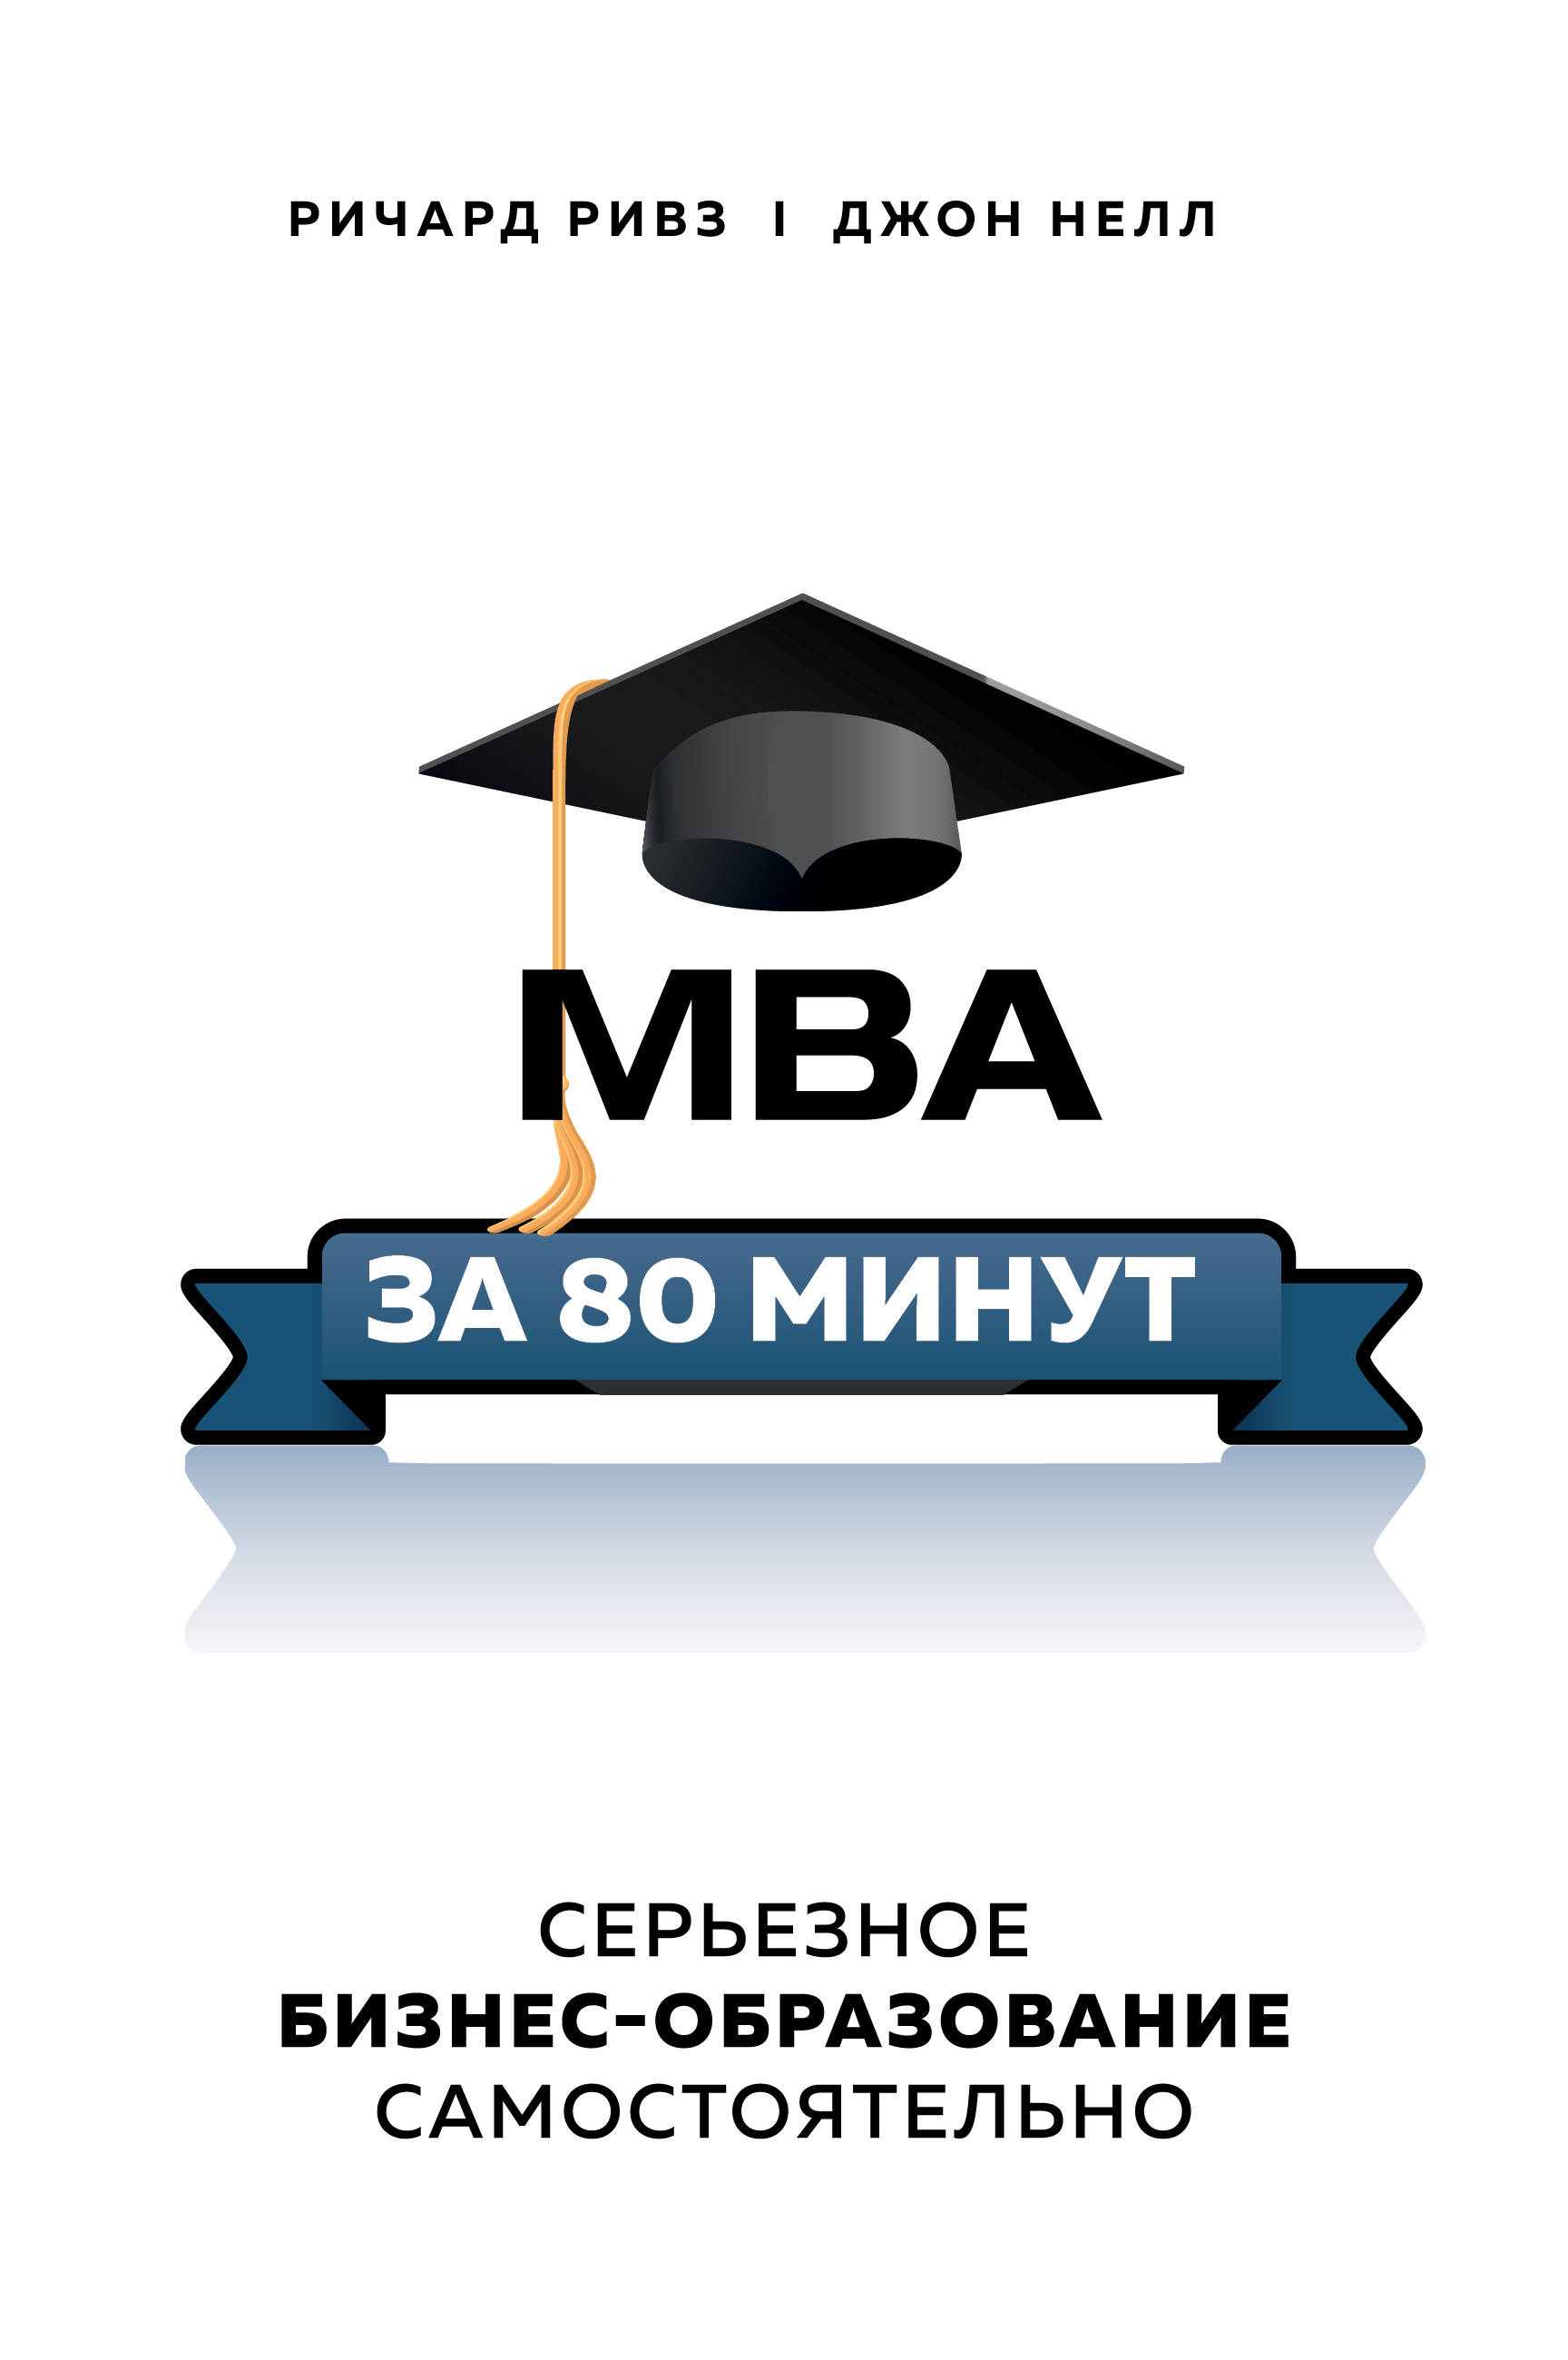  .,  . MBA  80 .  -  